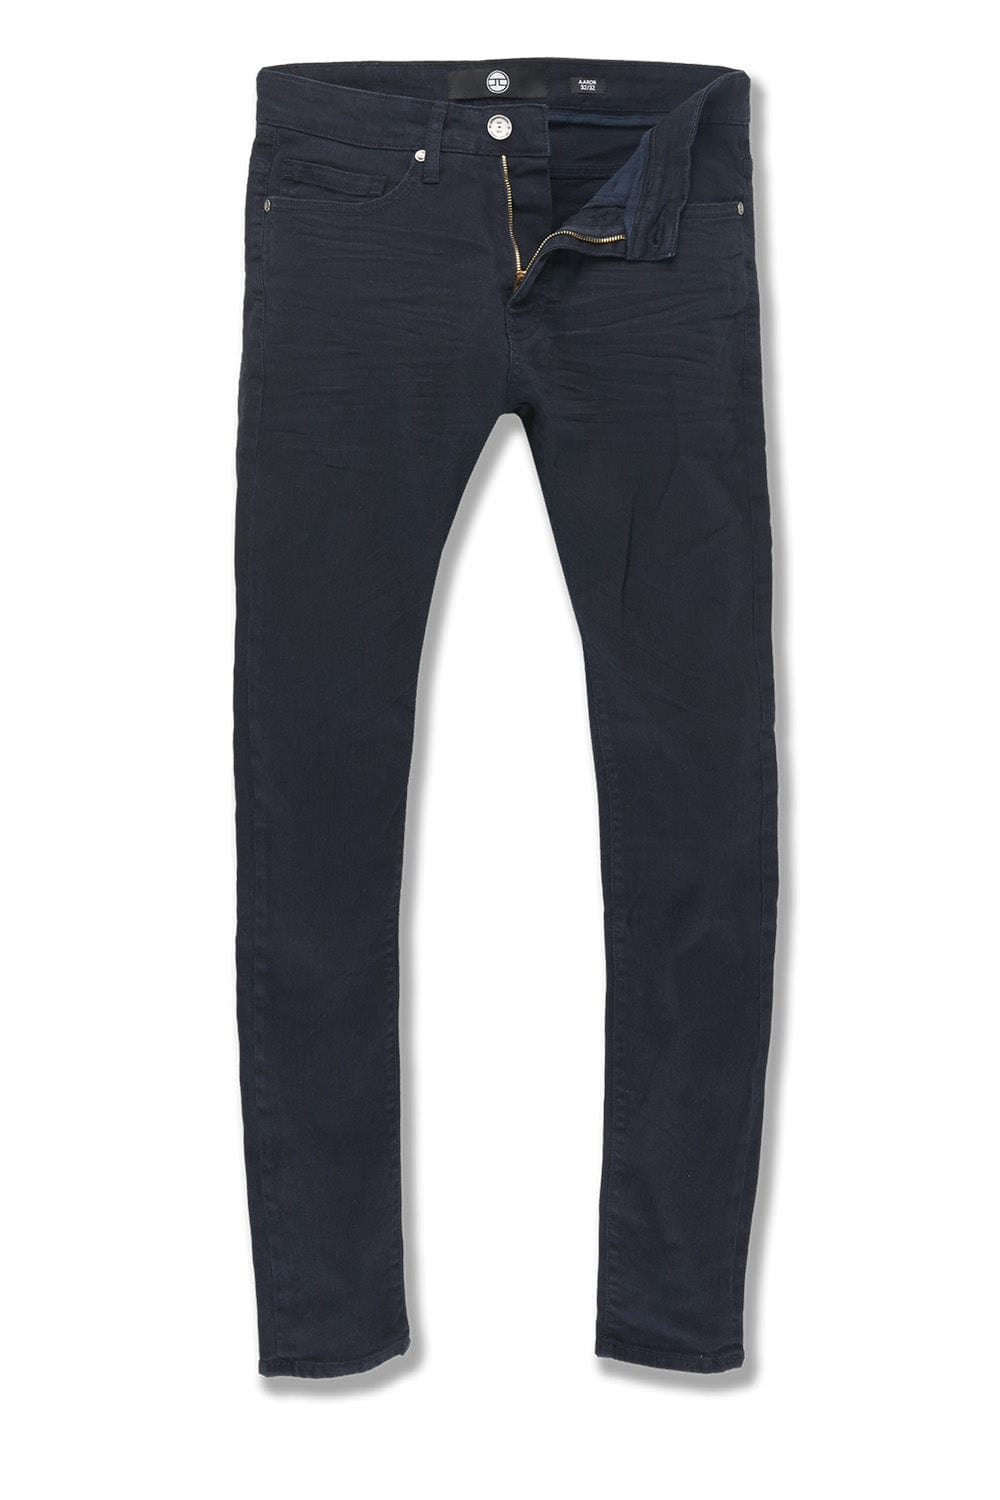 Jordan Craig Ross - Pure Tribeca Twill Pants (Core Colors) Navy / 28/32